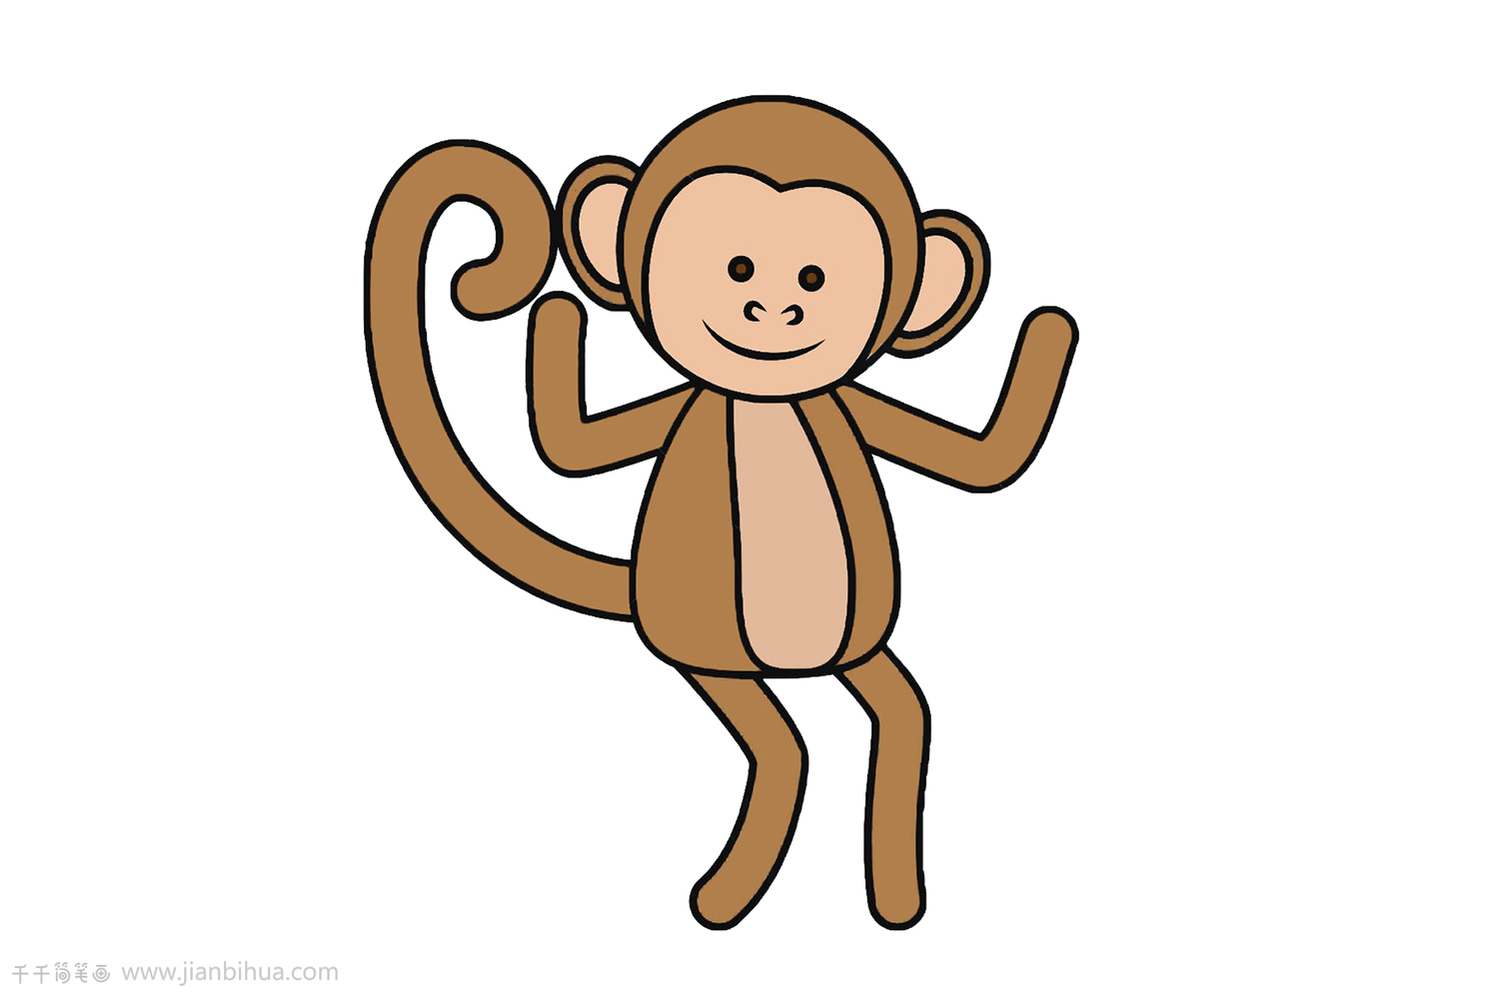 猴子的图画简笔画图片